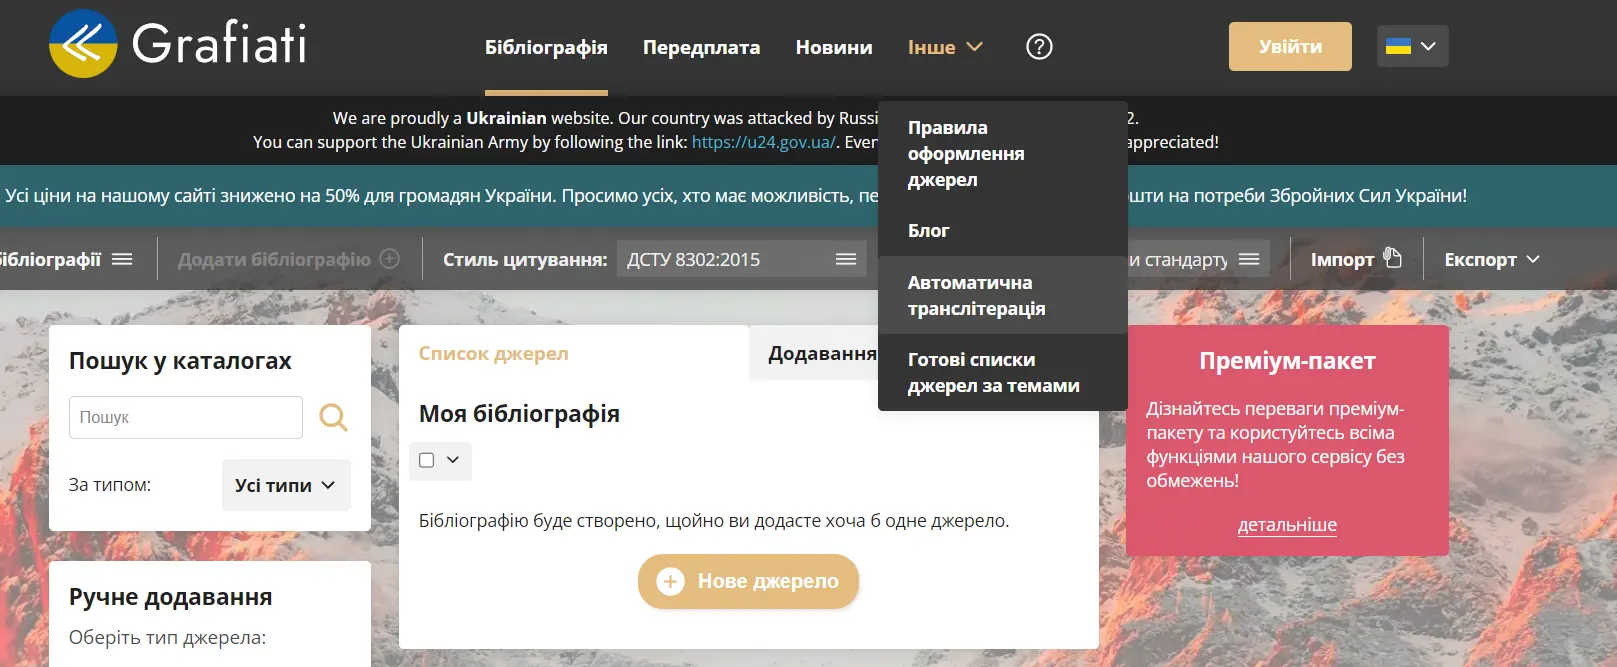 Grafiati.com - транслітерація тексту з кирилиці на латиницю